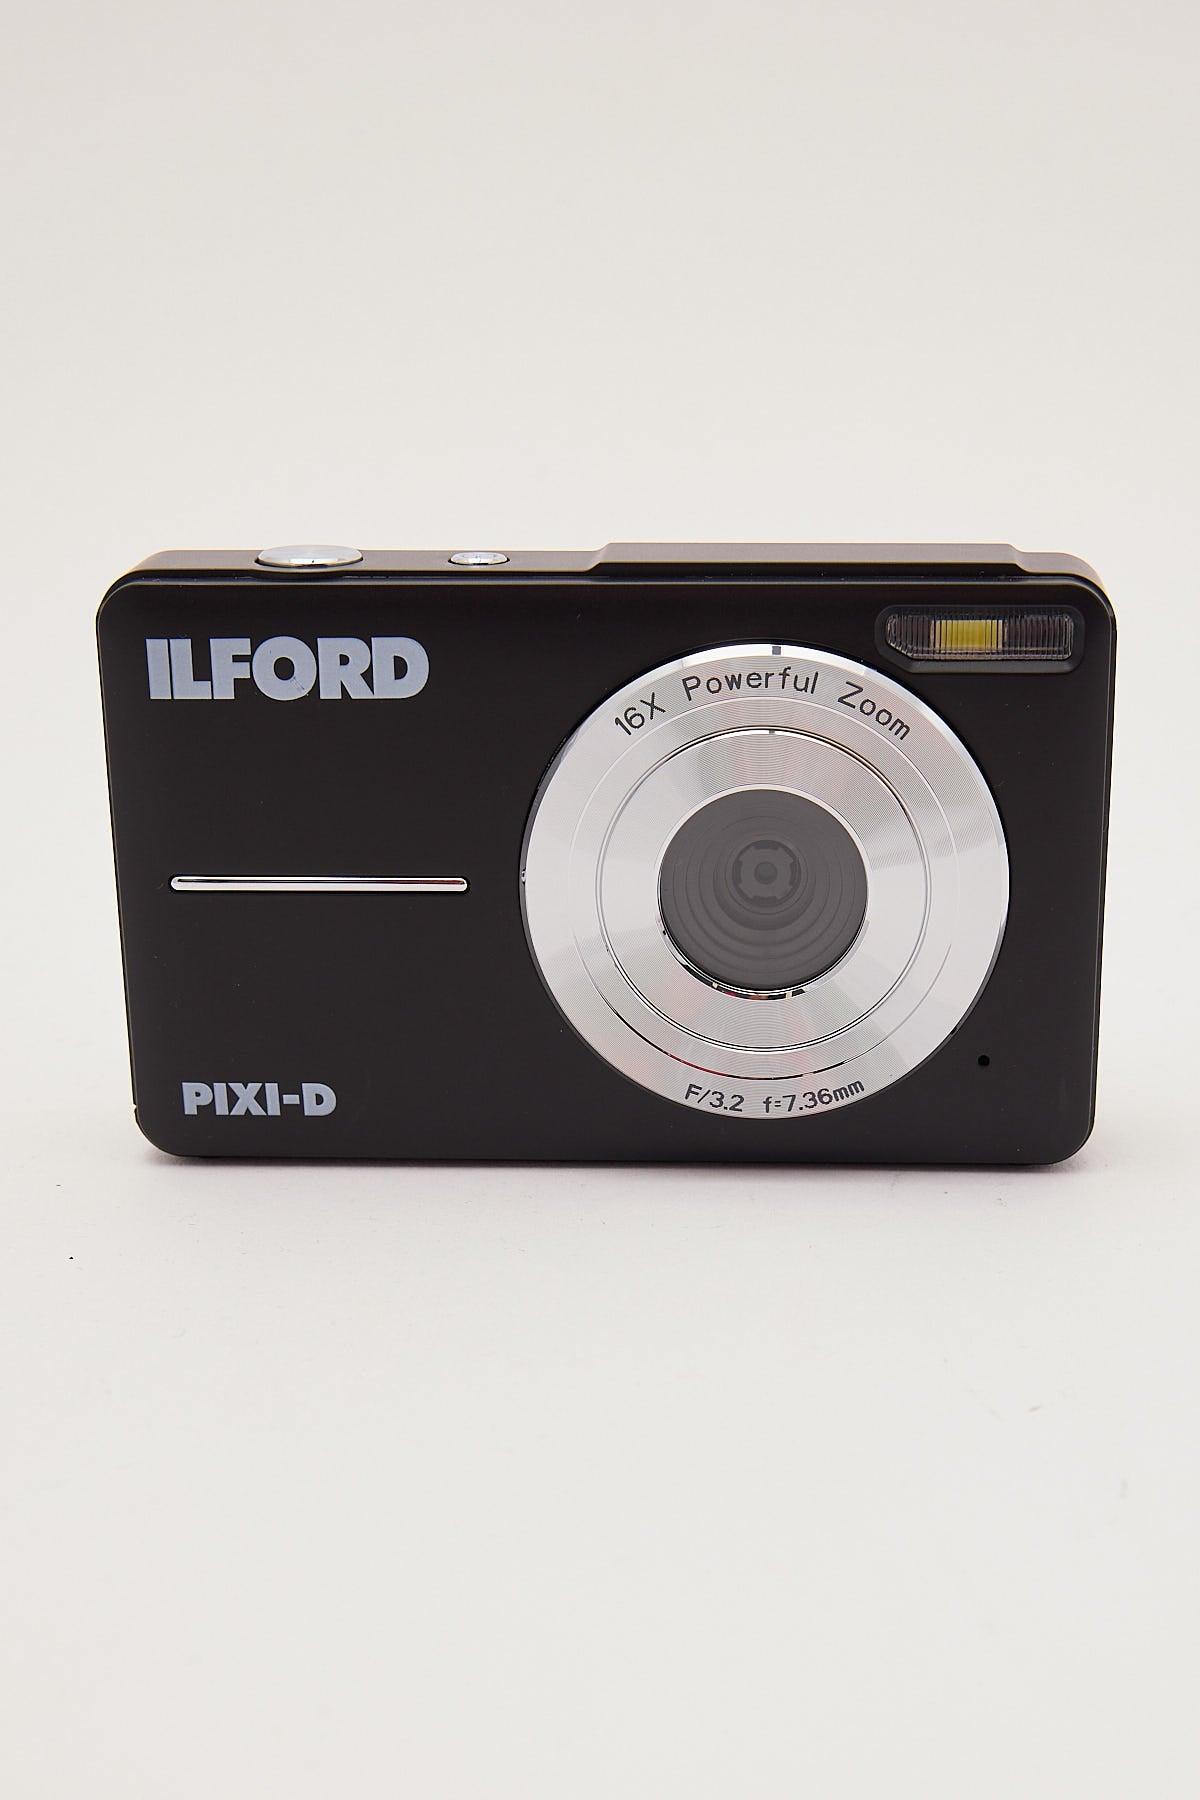 Ilford Pixi-D Compact Digital Camera Black